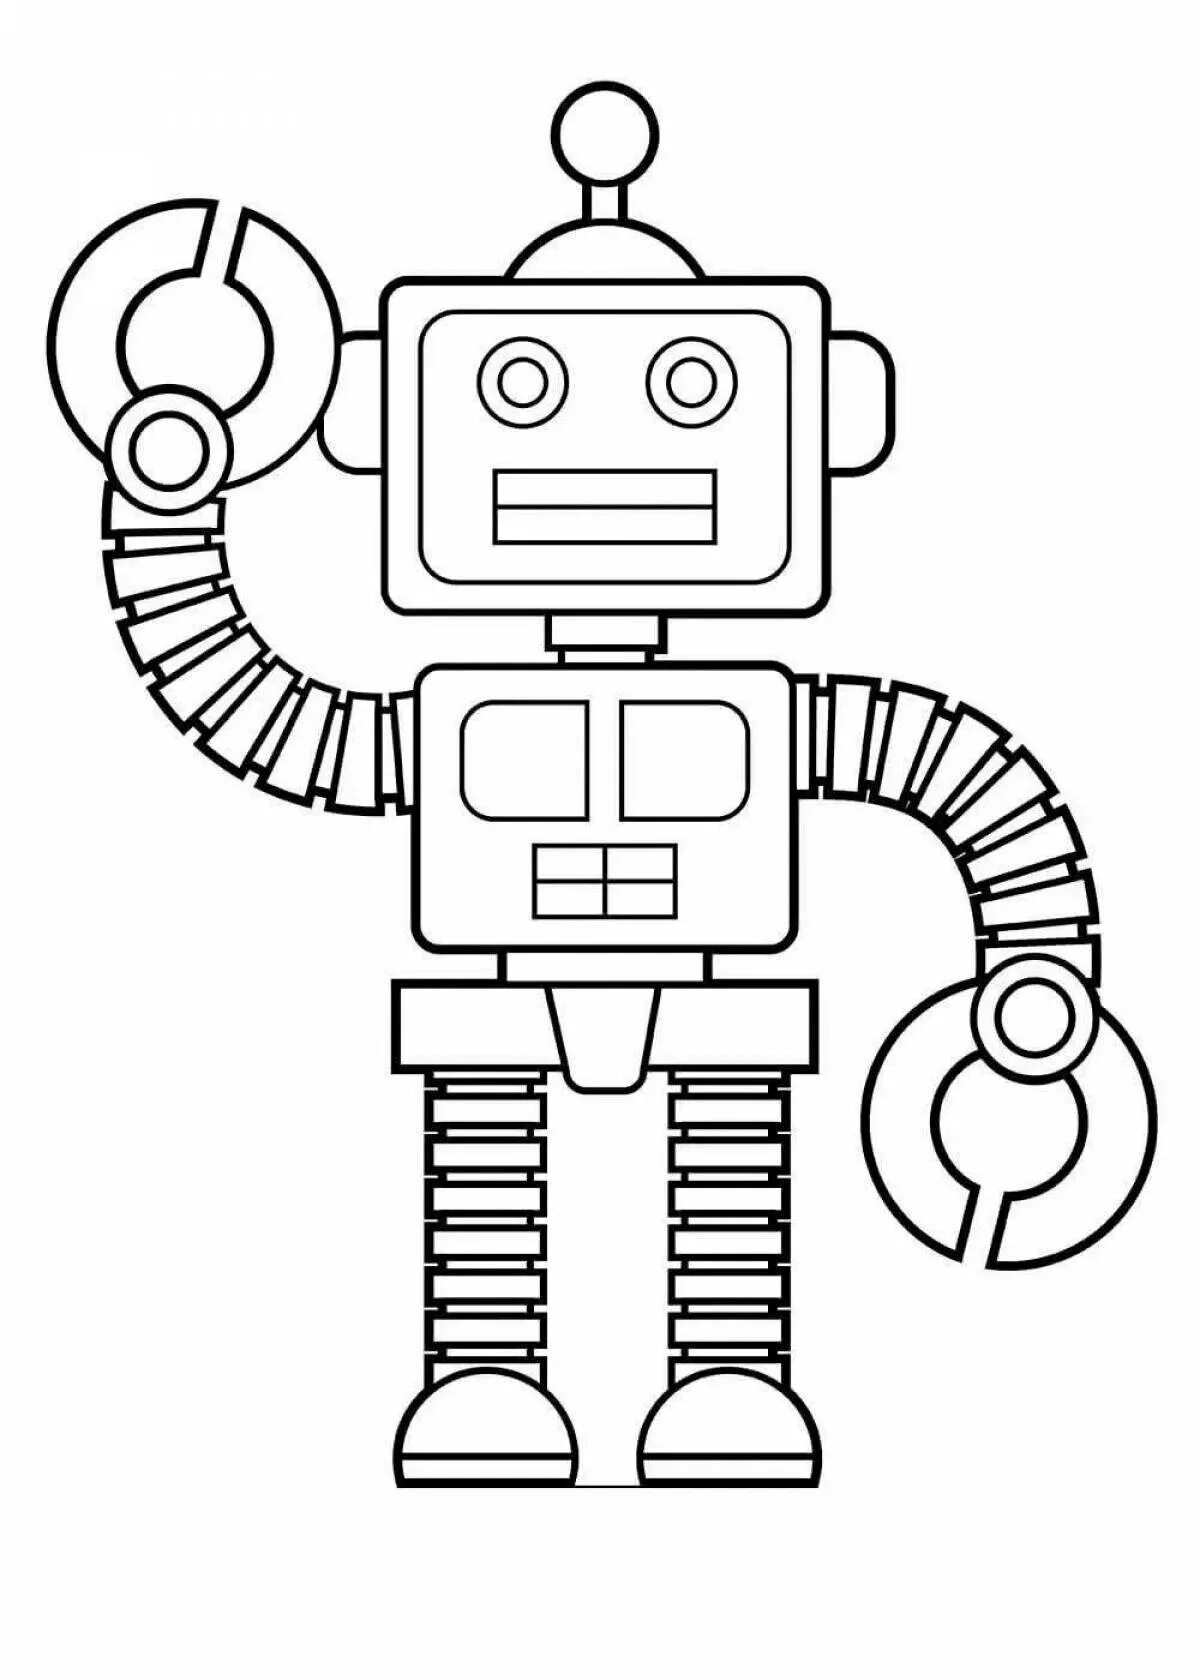 Раскраски. Роботы. Тоботы. Раскраска. Робот раскраска для детей. Робот раскраска печать.